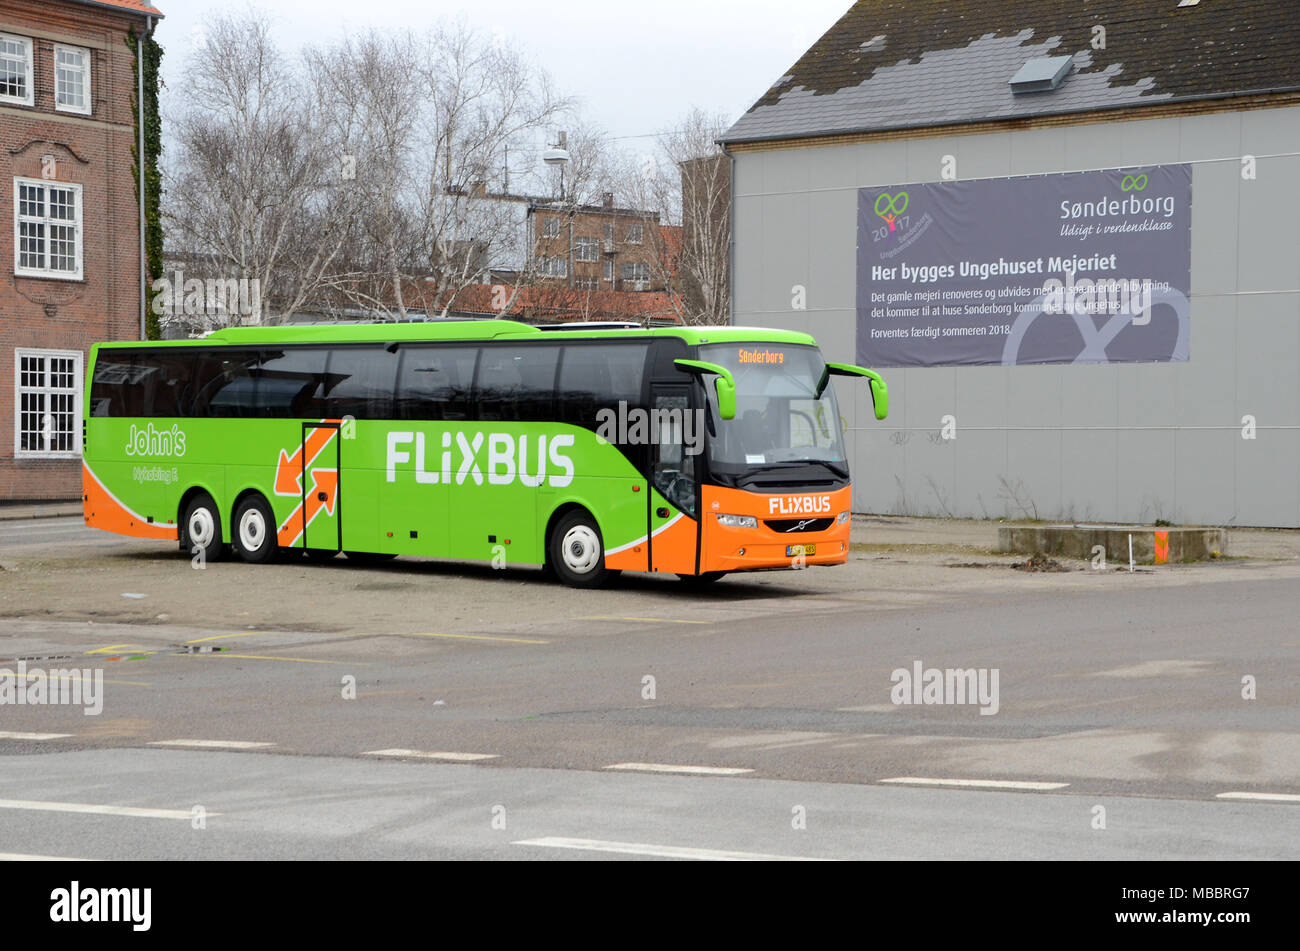 In Sonderborg, Dänemark - April 5, 2018: Eine grüne flixbus, Teil eines wachsenden europäischen Netzwerks von preiswerten Buslinien. Stockfoto